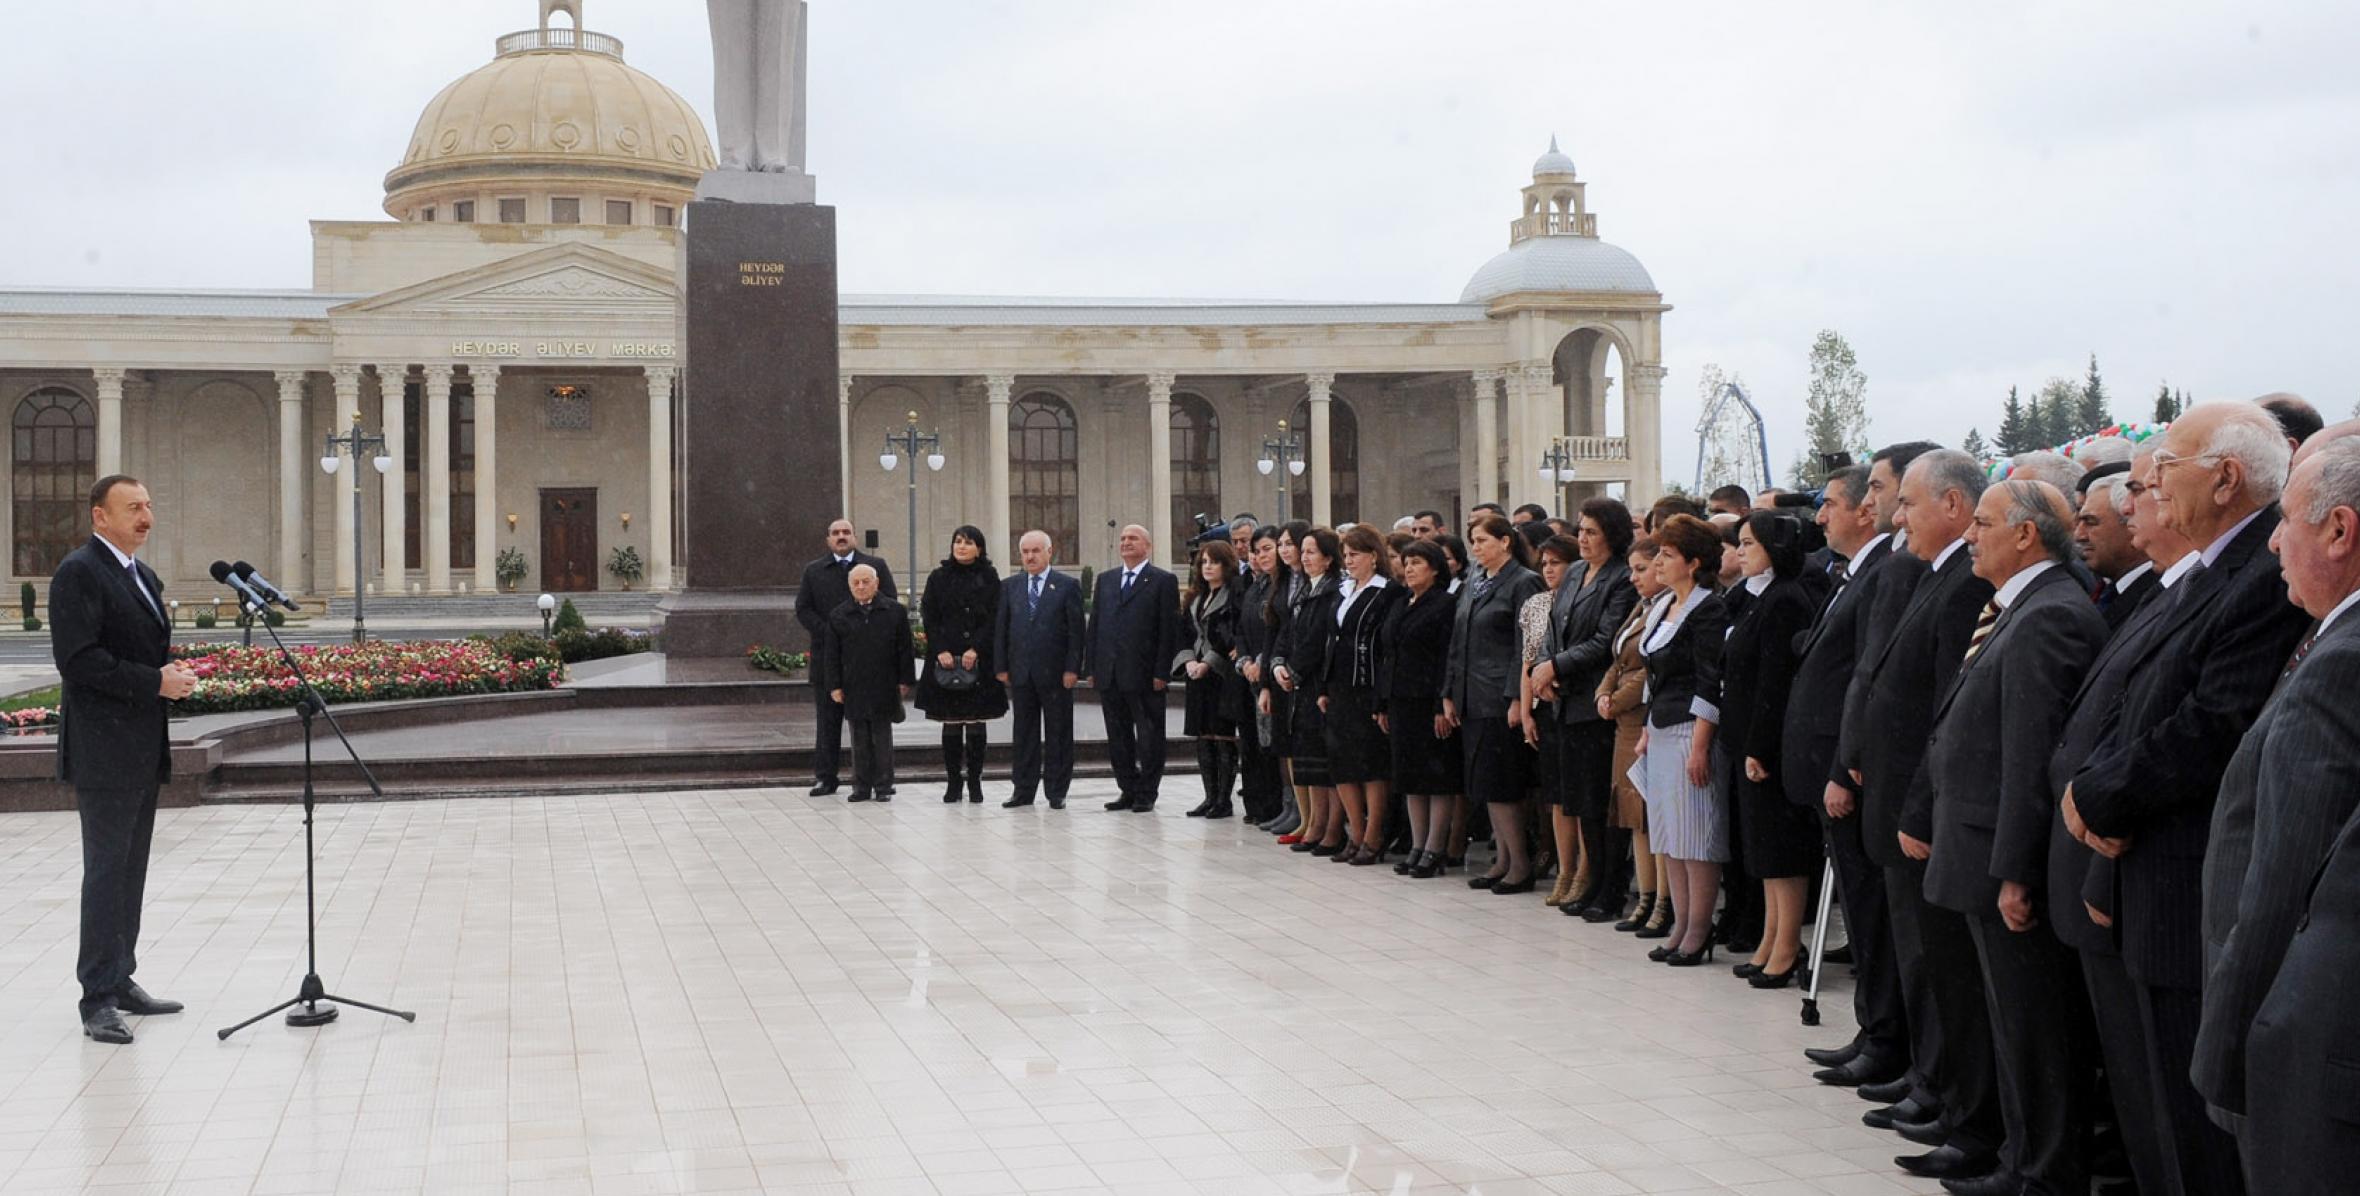 Speech by Ilham Aliyev at the opening of the Heydar Aliyev Center in Ujar